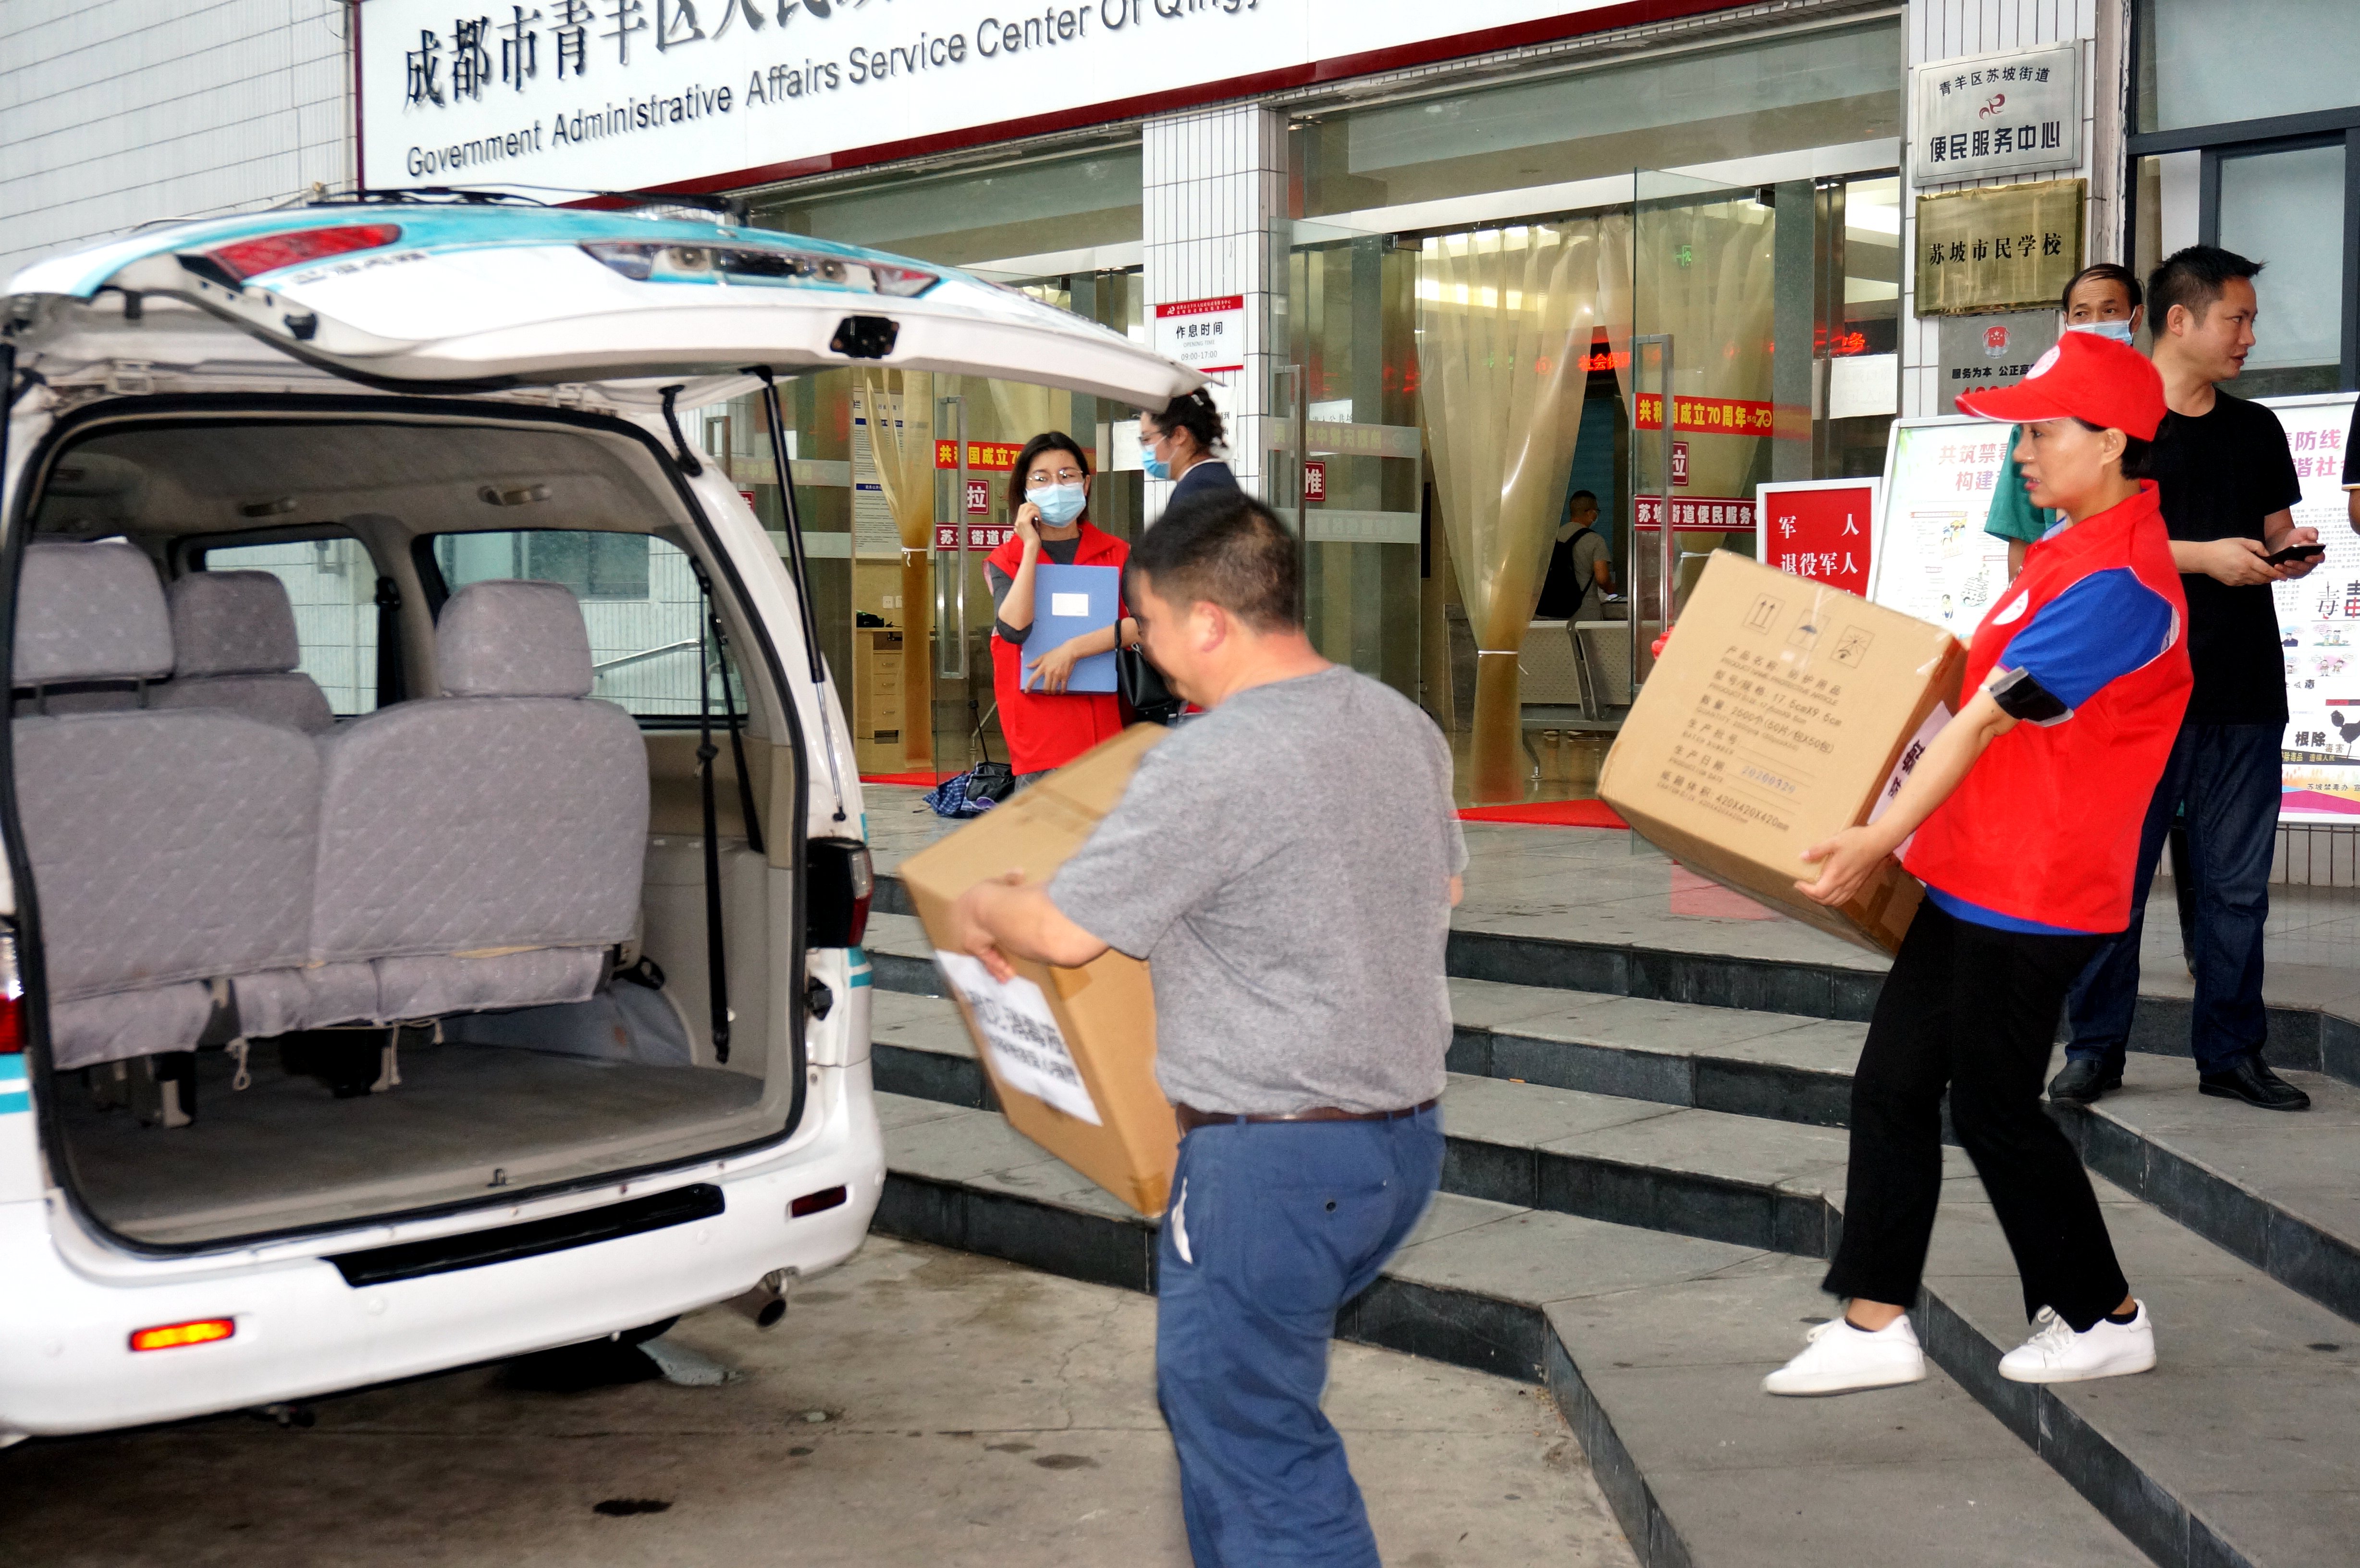 四川省众扶慈善基金会向苏坡街道办事处捐赠防疫物资